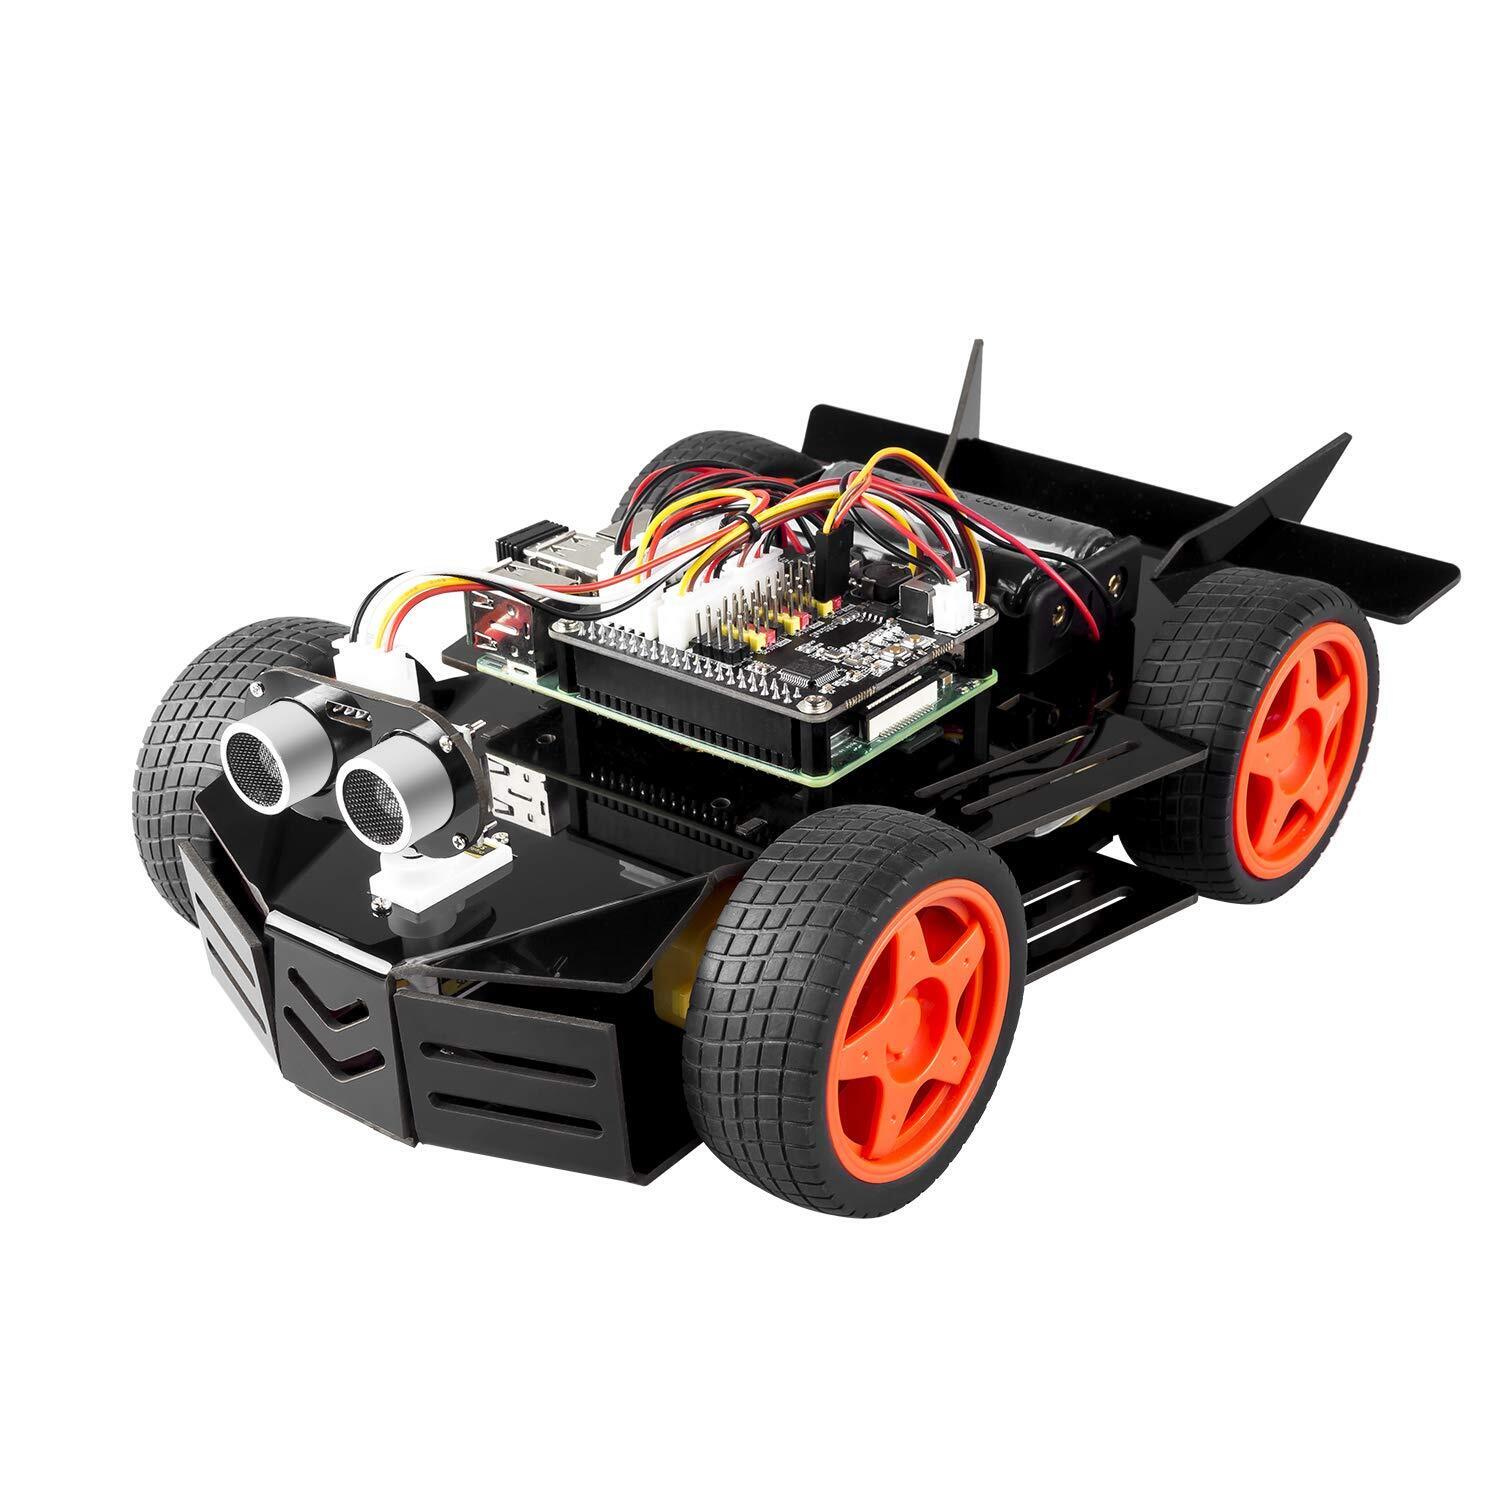 SunFounder Robot Car Kit for Raspberry Pi, 4WD HAT Module, Ultrasonic Sensor, Ve